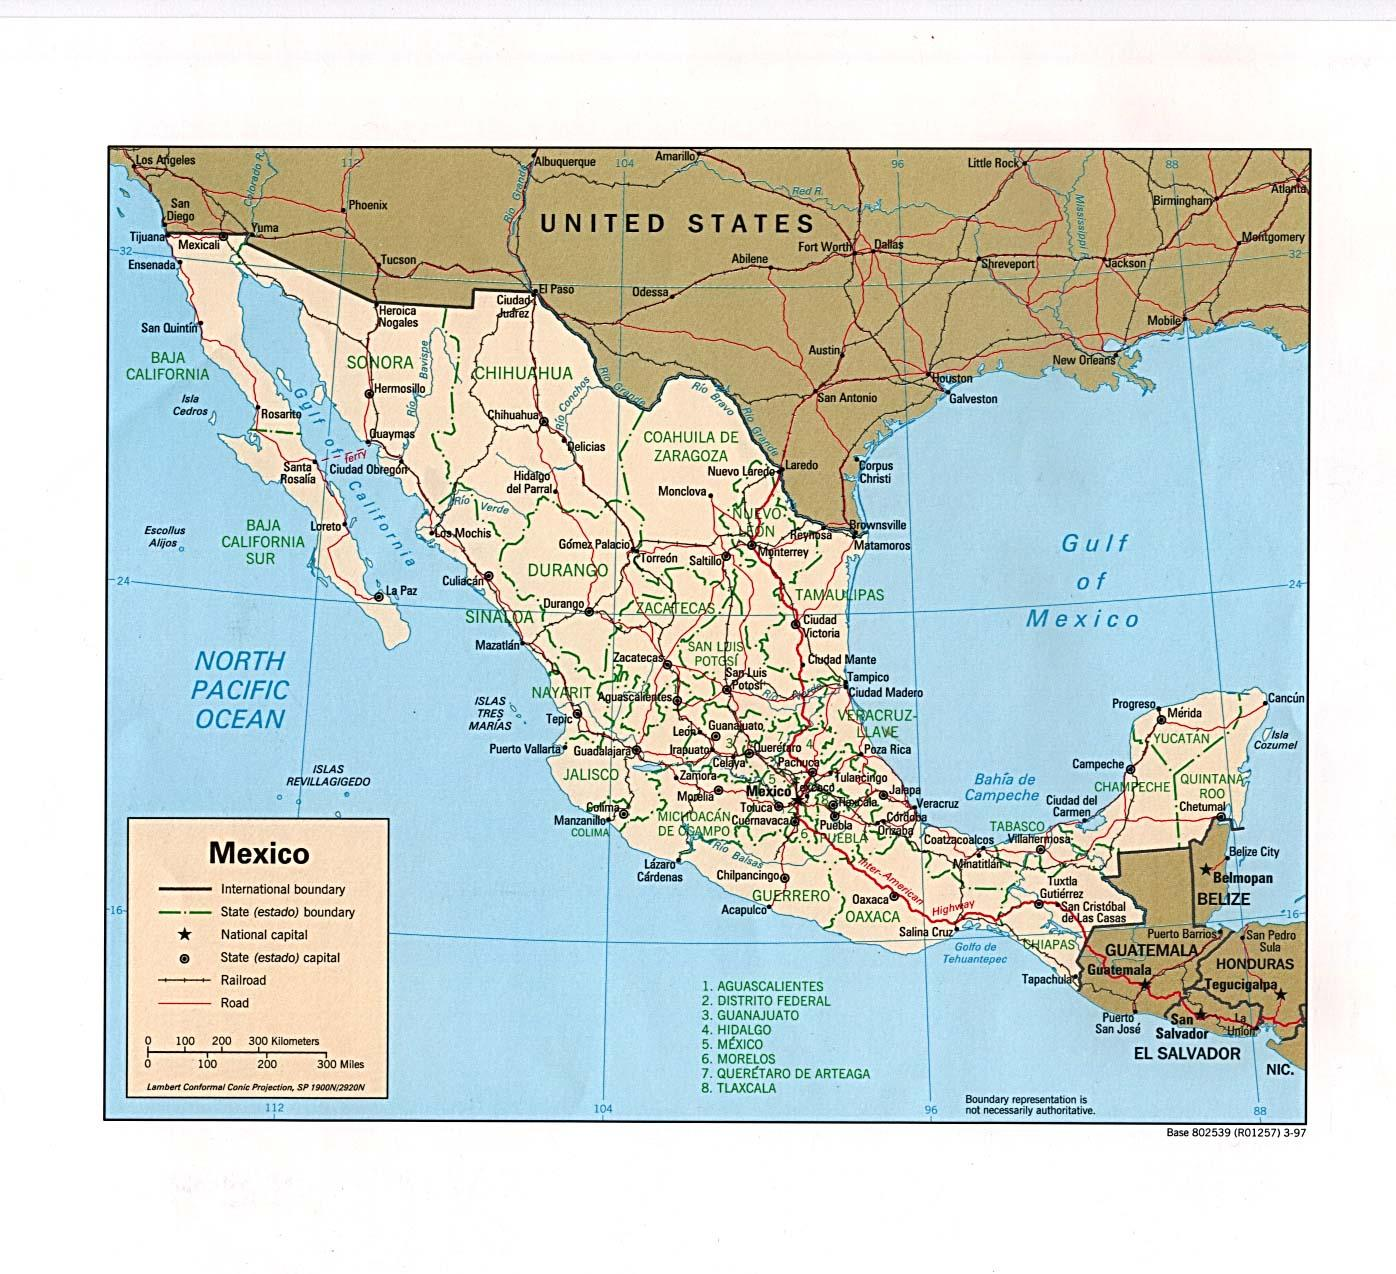 ΣΥΓΚΡΙΤΙΚΗ ΠΟΛΙΤΙΚΗ II: ΤΡΙΤΟΣ ΚΟΣΜΟΣ Ζαπατίστας: Πώς εξελίχθηκε το κίνημα των Τσιάπας και τί απέγινε ο υποδιοικητής Μάρκος μετά την πορεία του προς την πρωτεύουσα του Μεξικού; Συνέβαλε το κίνημα των